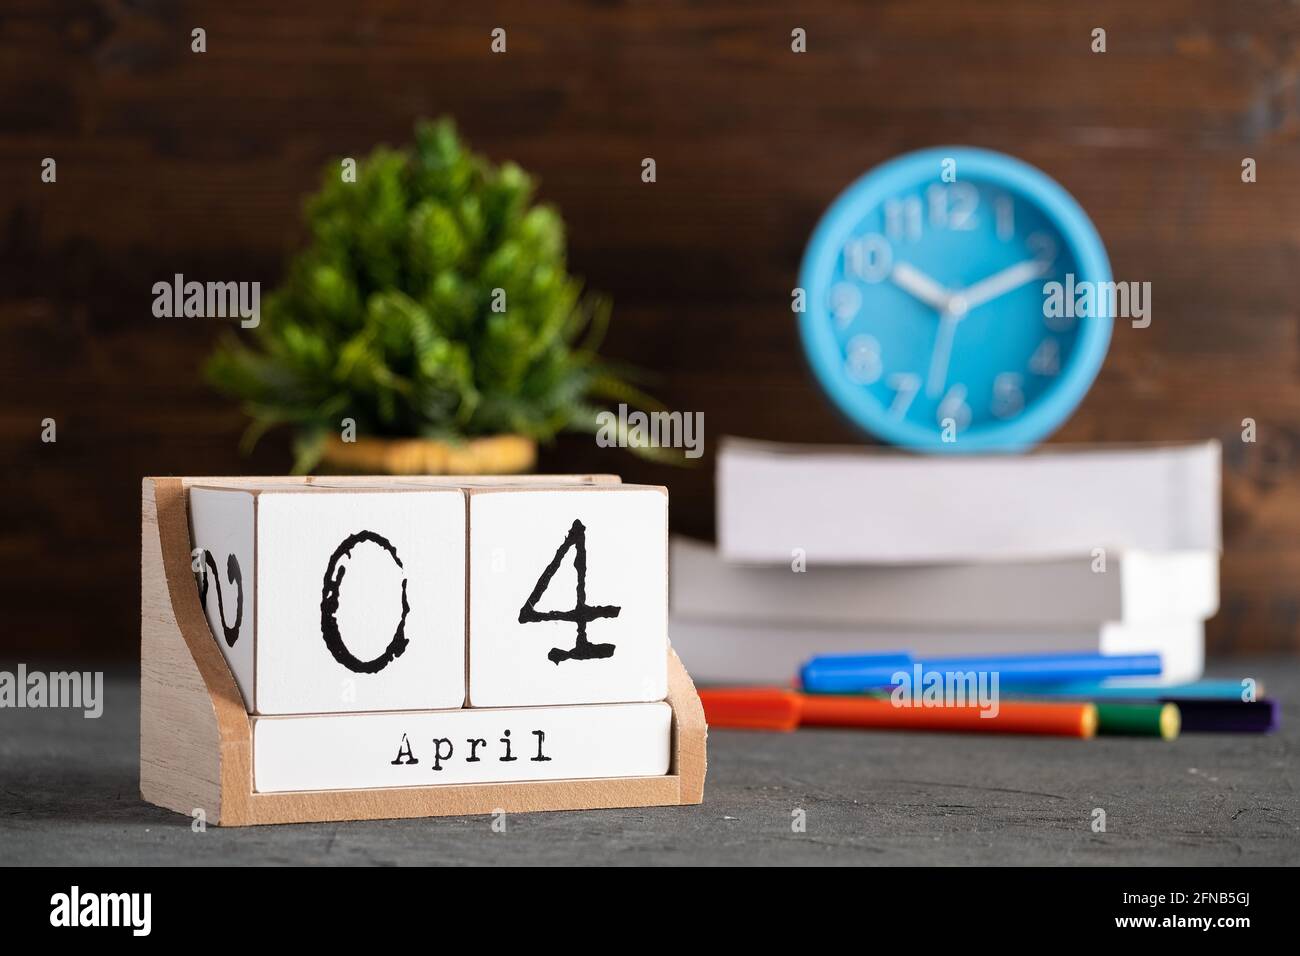 Le 04 avril. Avril 04 calendrier cube en bois avec objets flous sur fond. Banque D'Images